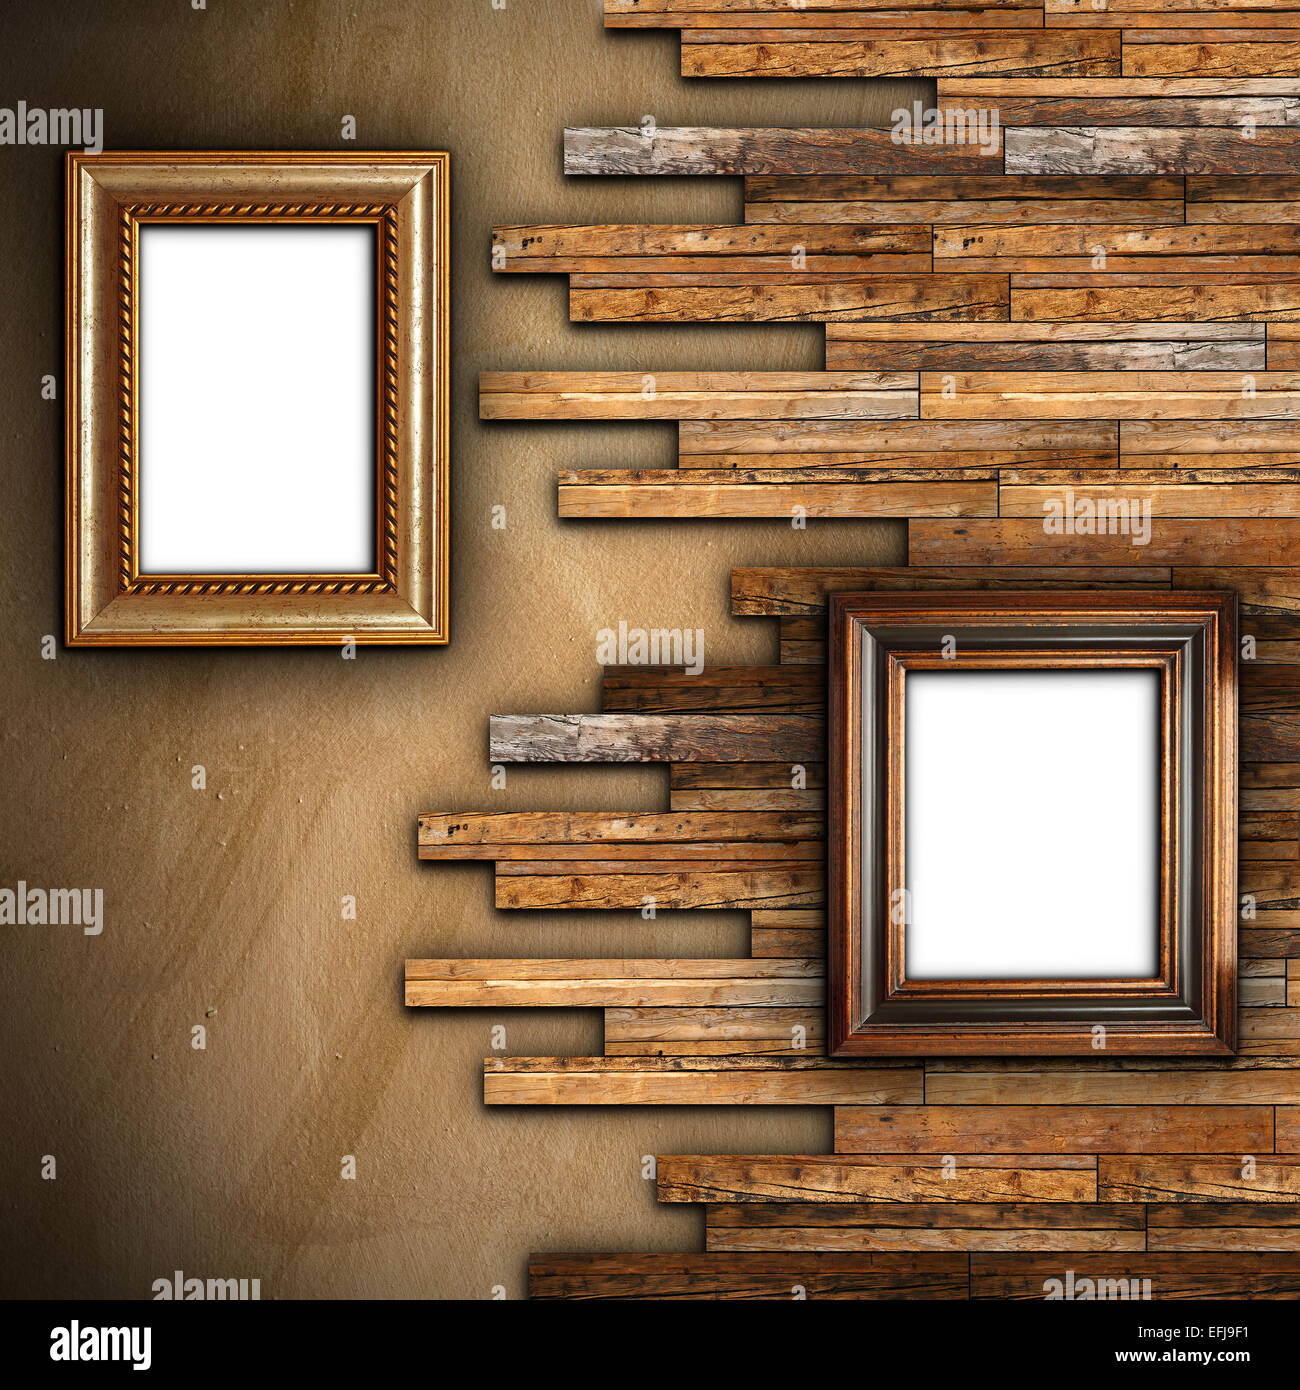 Abstract parete con intonaco e finitura in legno con due bellissimi quadri di pittura per il vostro messaggio o immagine Foto Stock